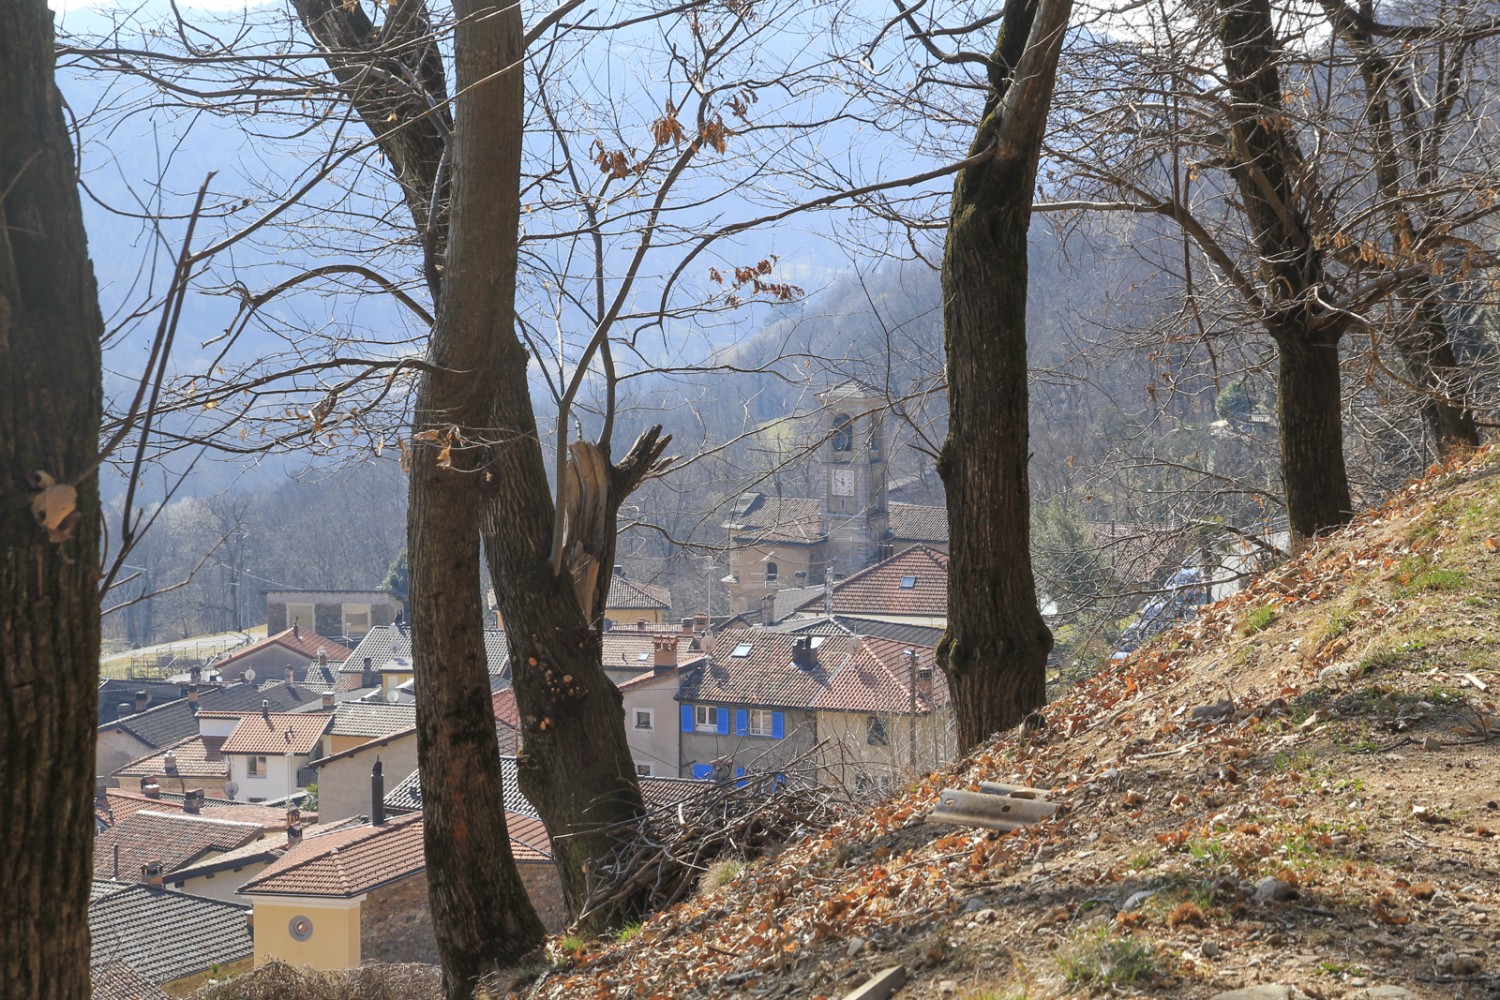 Il sentiero passa in prossimità del villaggio di Vezio. Foto: Elsbeth Flüeler